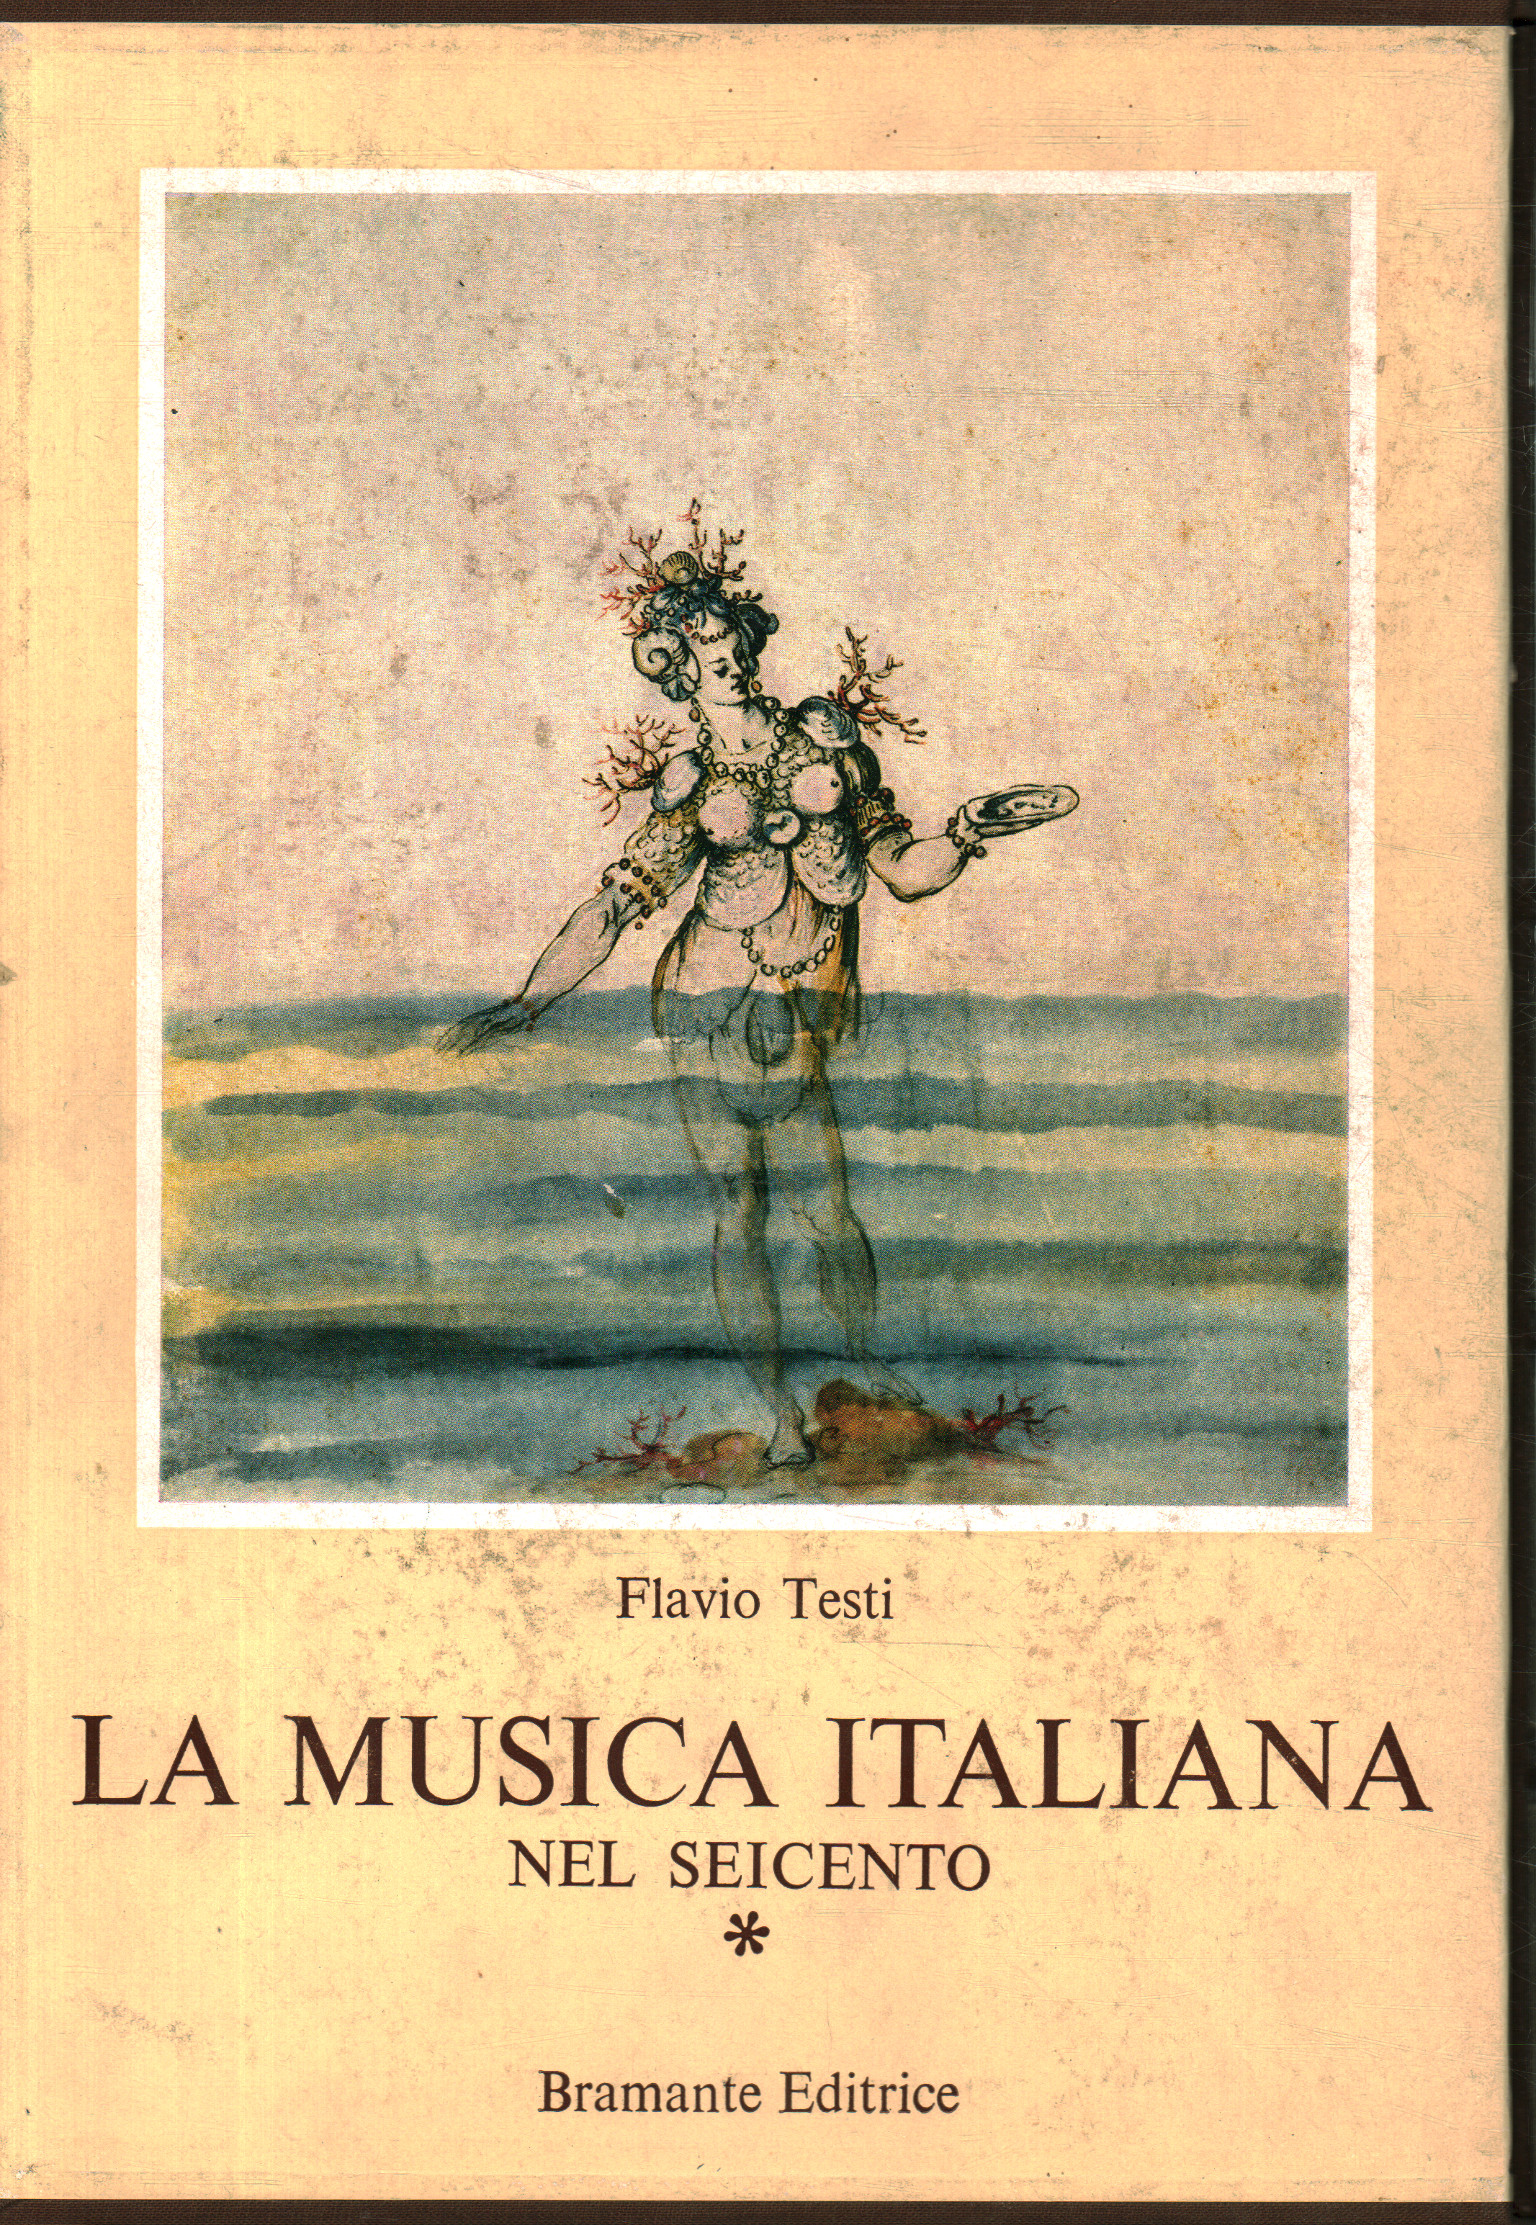 Música italiana en el siglo XVII, Música italiana en el siglo XVII 1